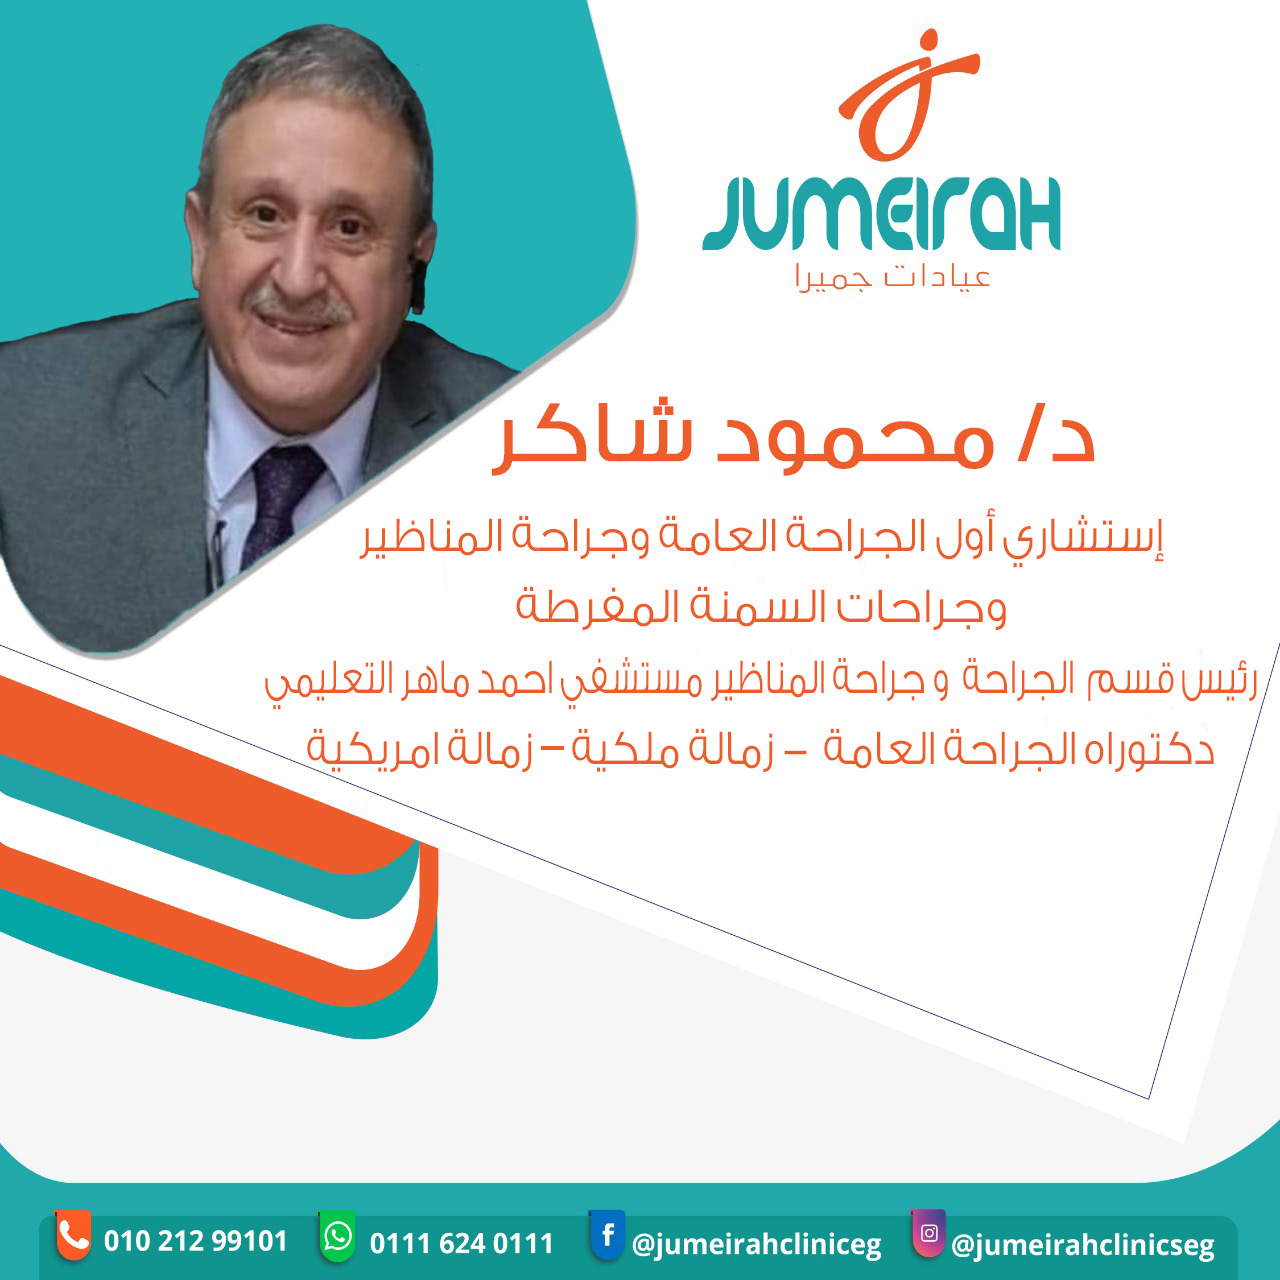 Dr. Mahmoud Shaker